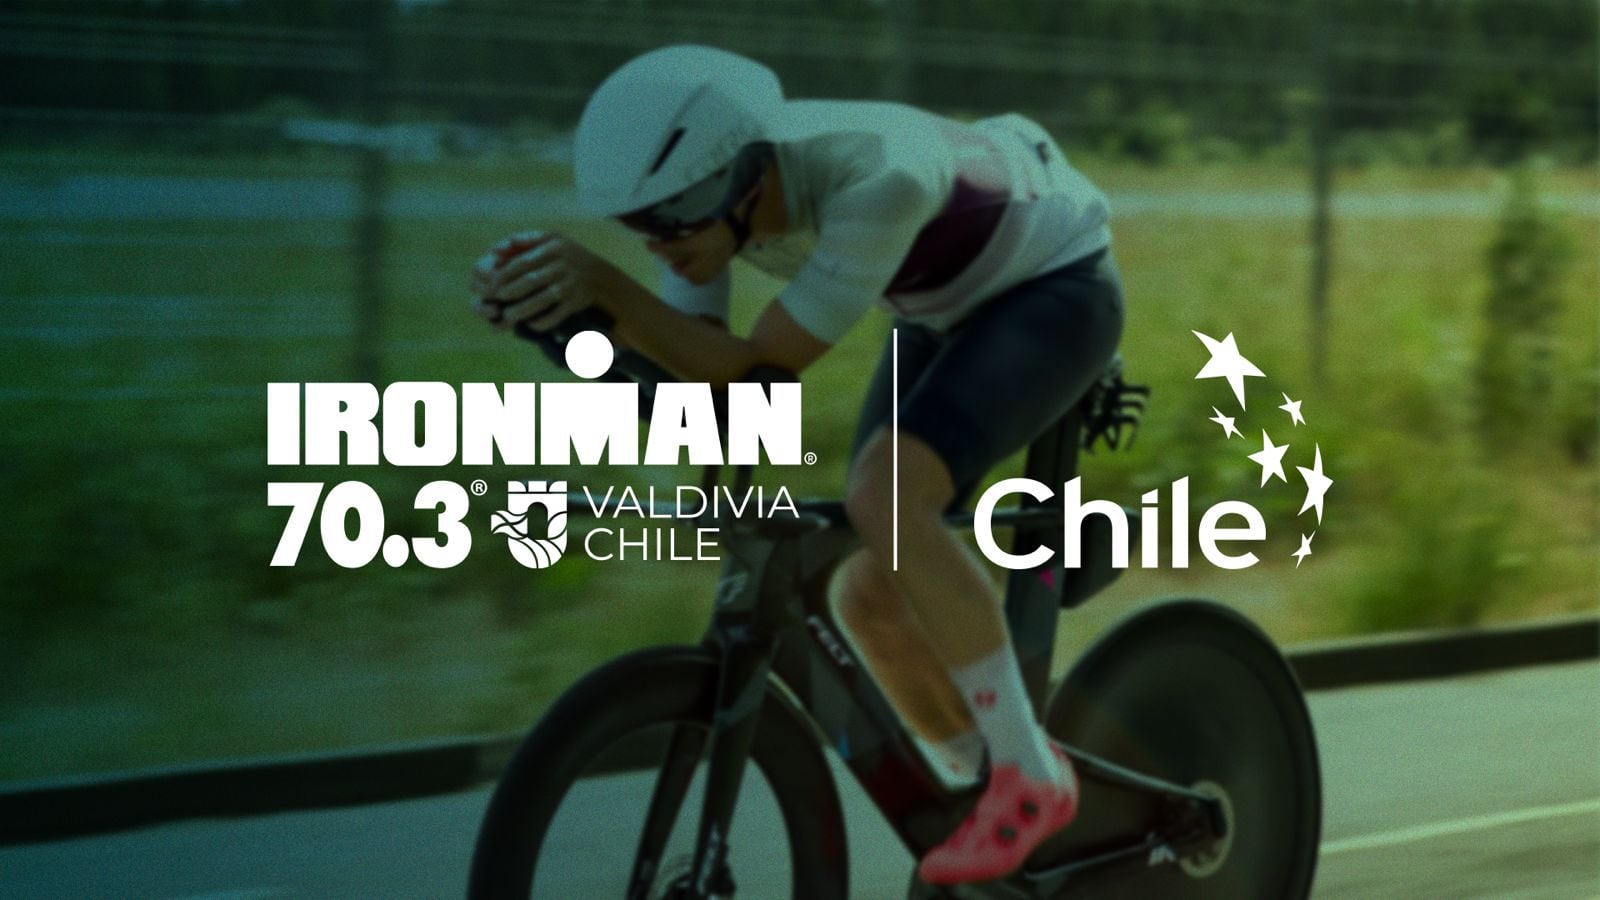 El sello Marca Chile estará presente en Valdivia.